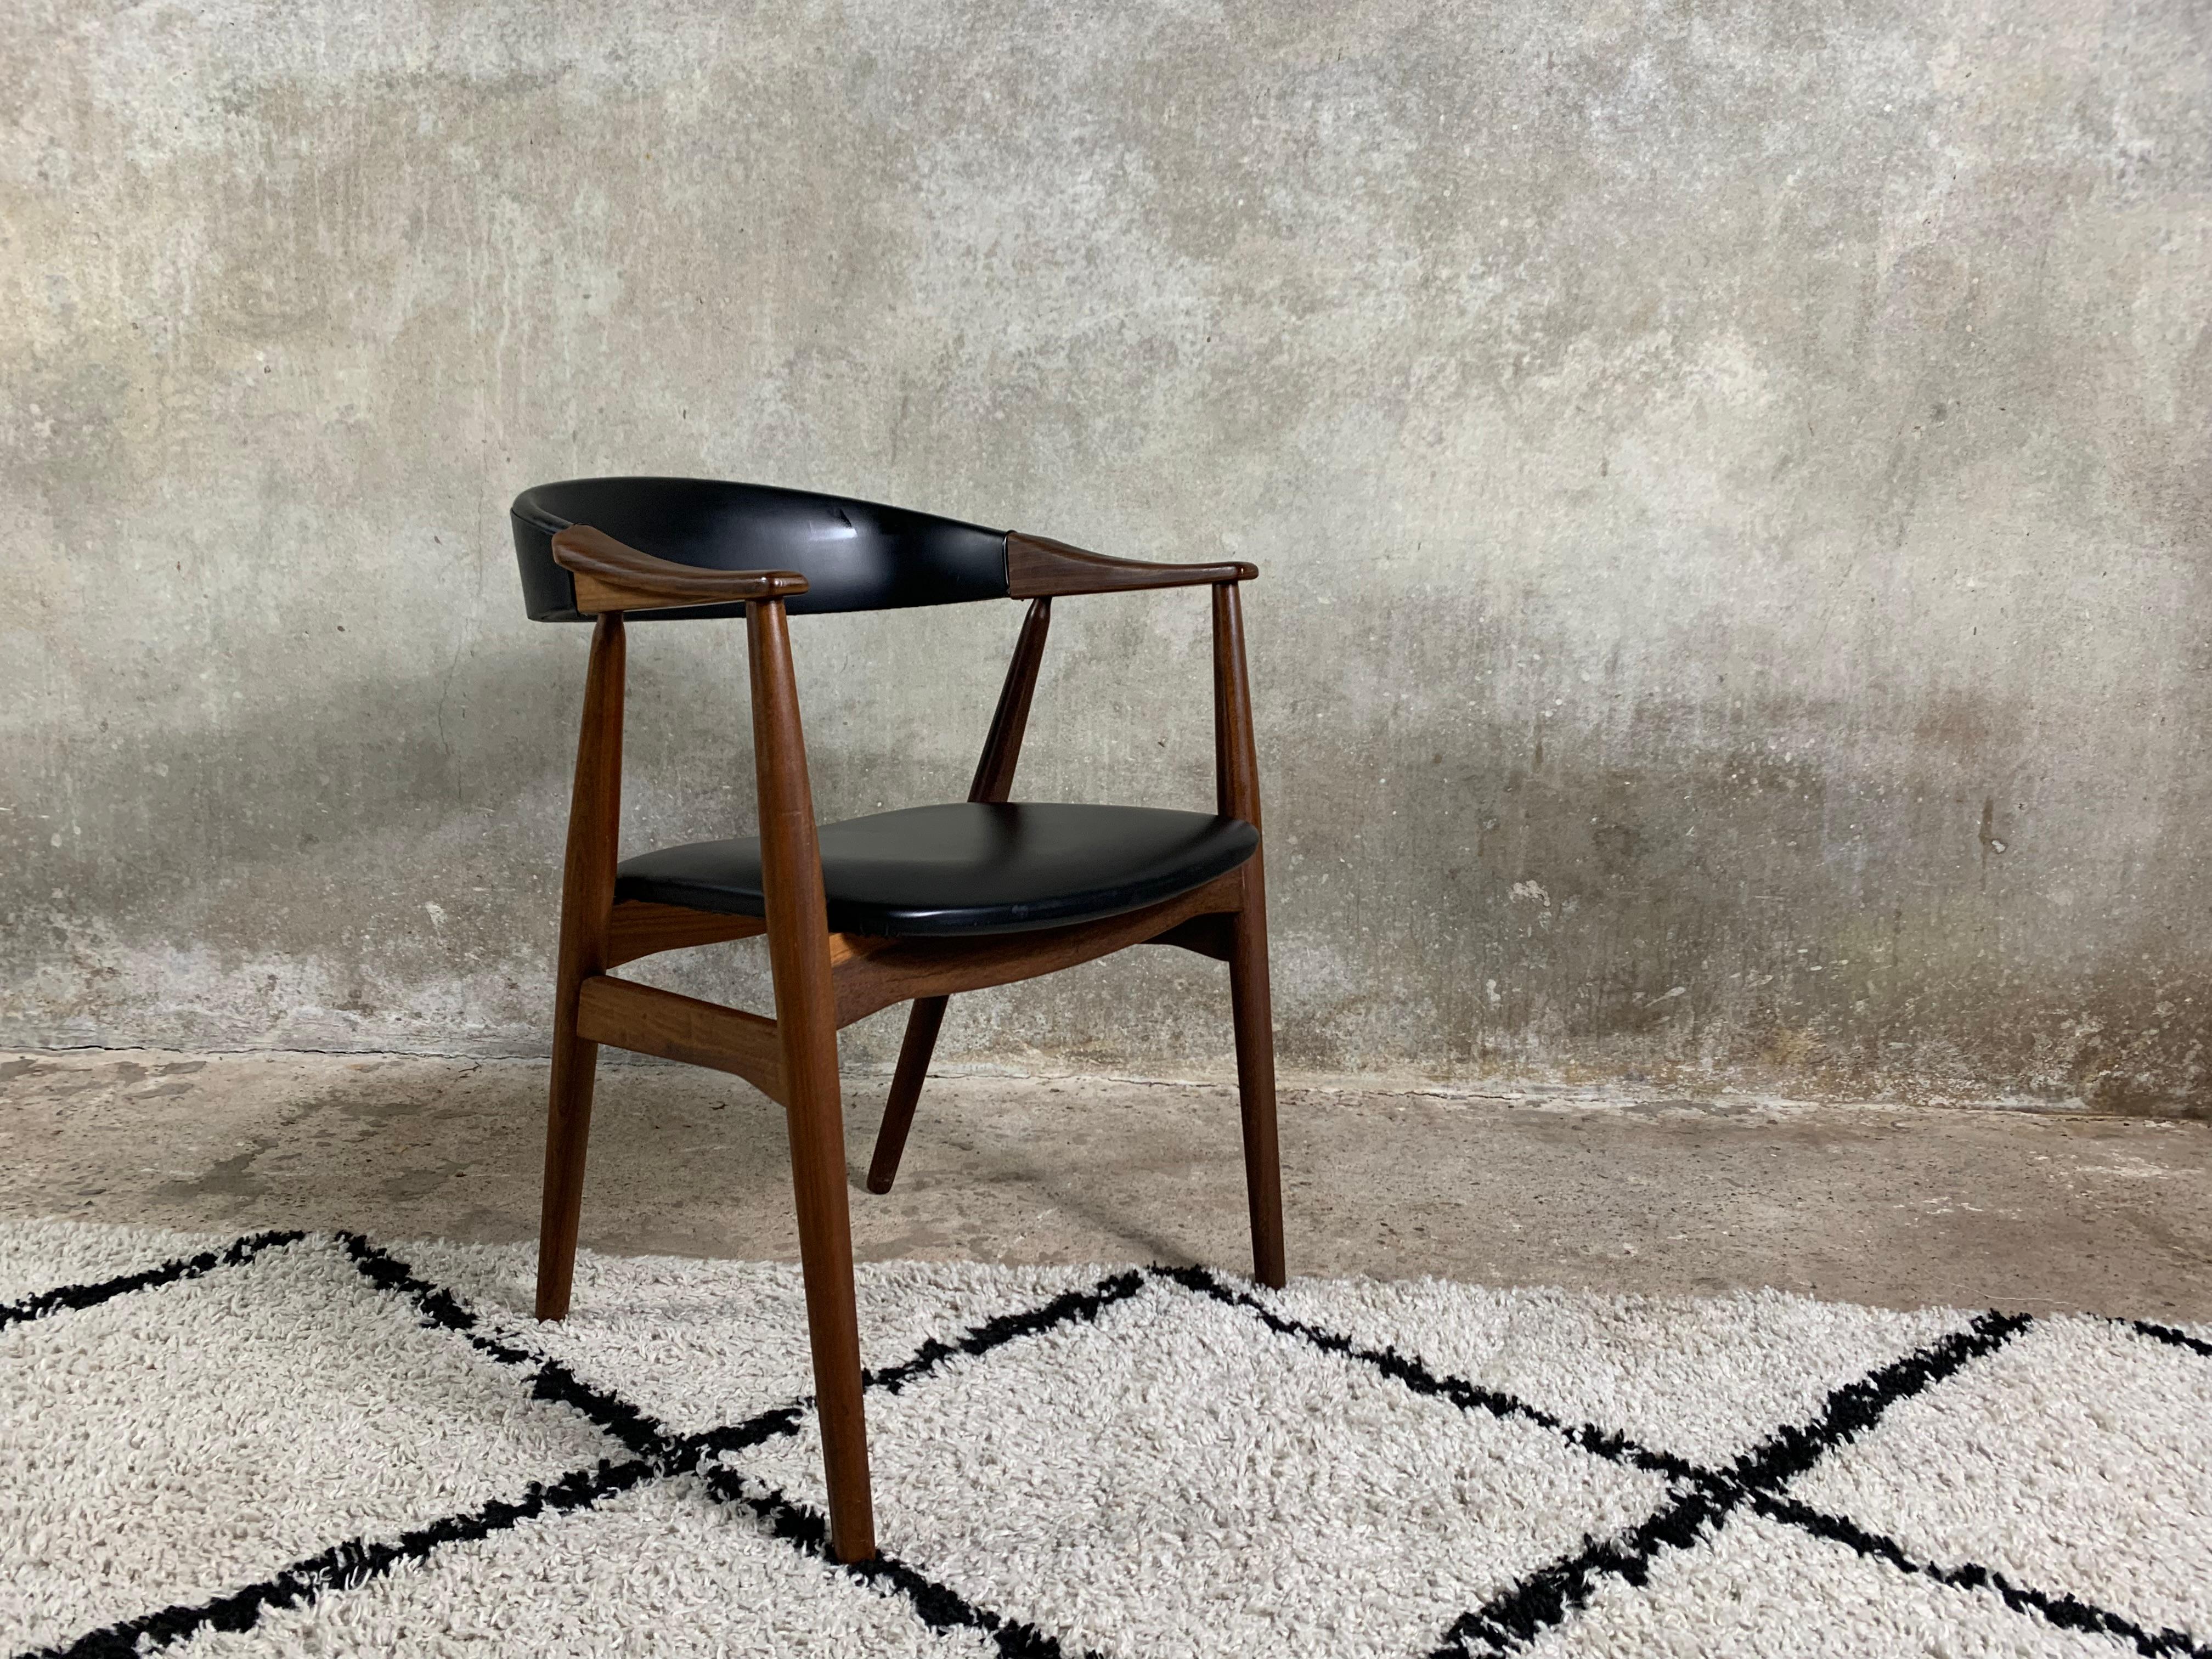 Fauteuil modèle 213 en teck et simili cuir/skai conçu par Th Harlev pour Farstrup Møbler en 1958. La chaise est en très bon état d'origine. Un bel exemple de minimalisme scandinave à son meilleur.